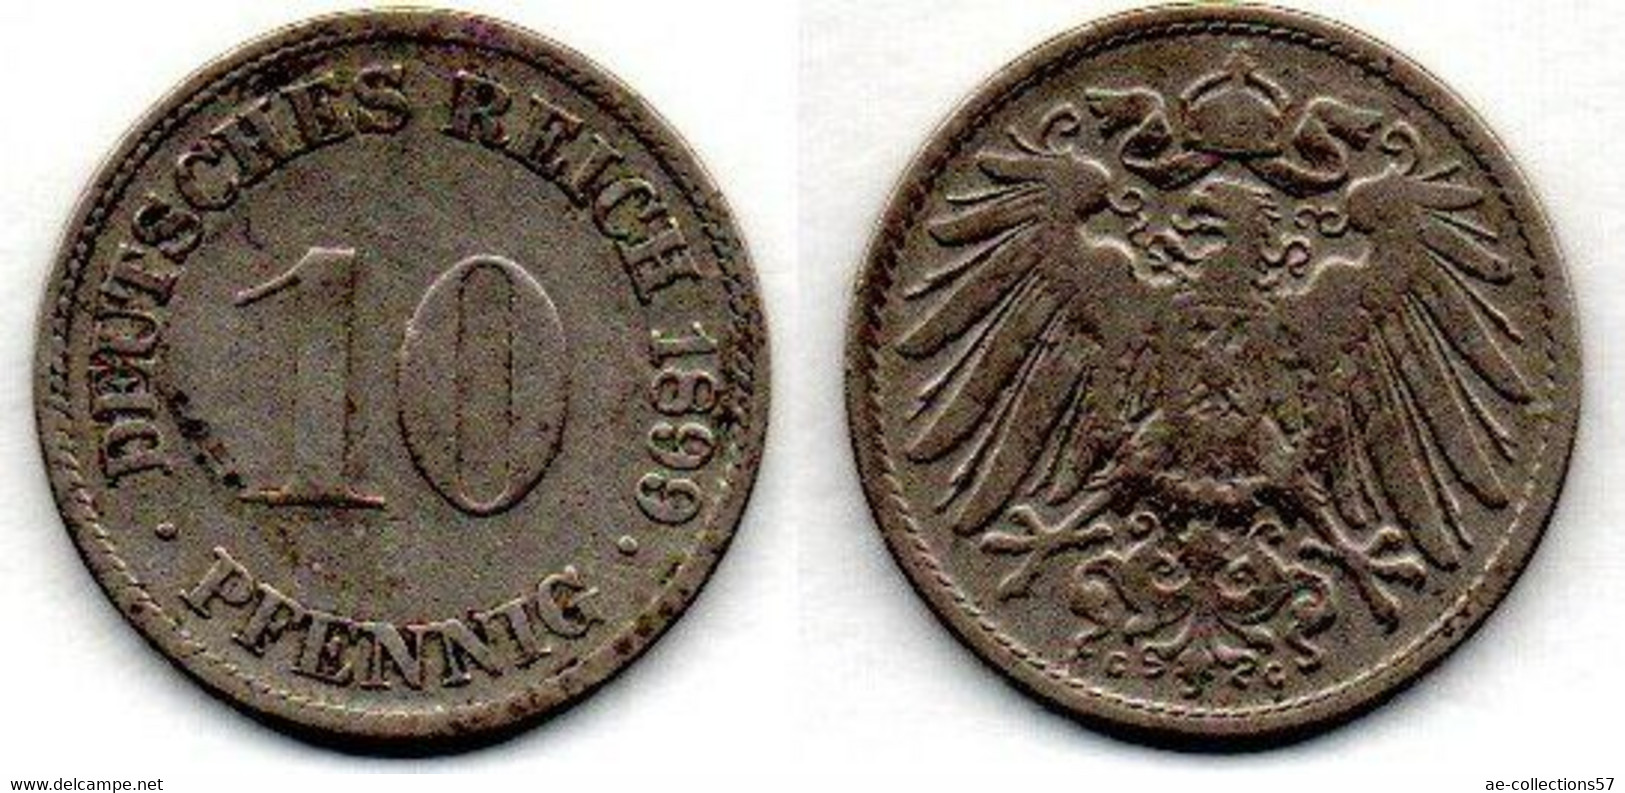 Allemagne - 10 Pfennig 1899 G TB - 10 Pfennig